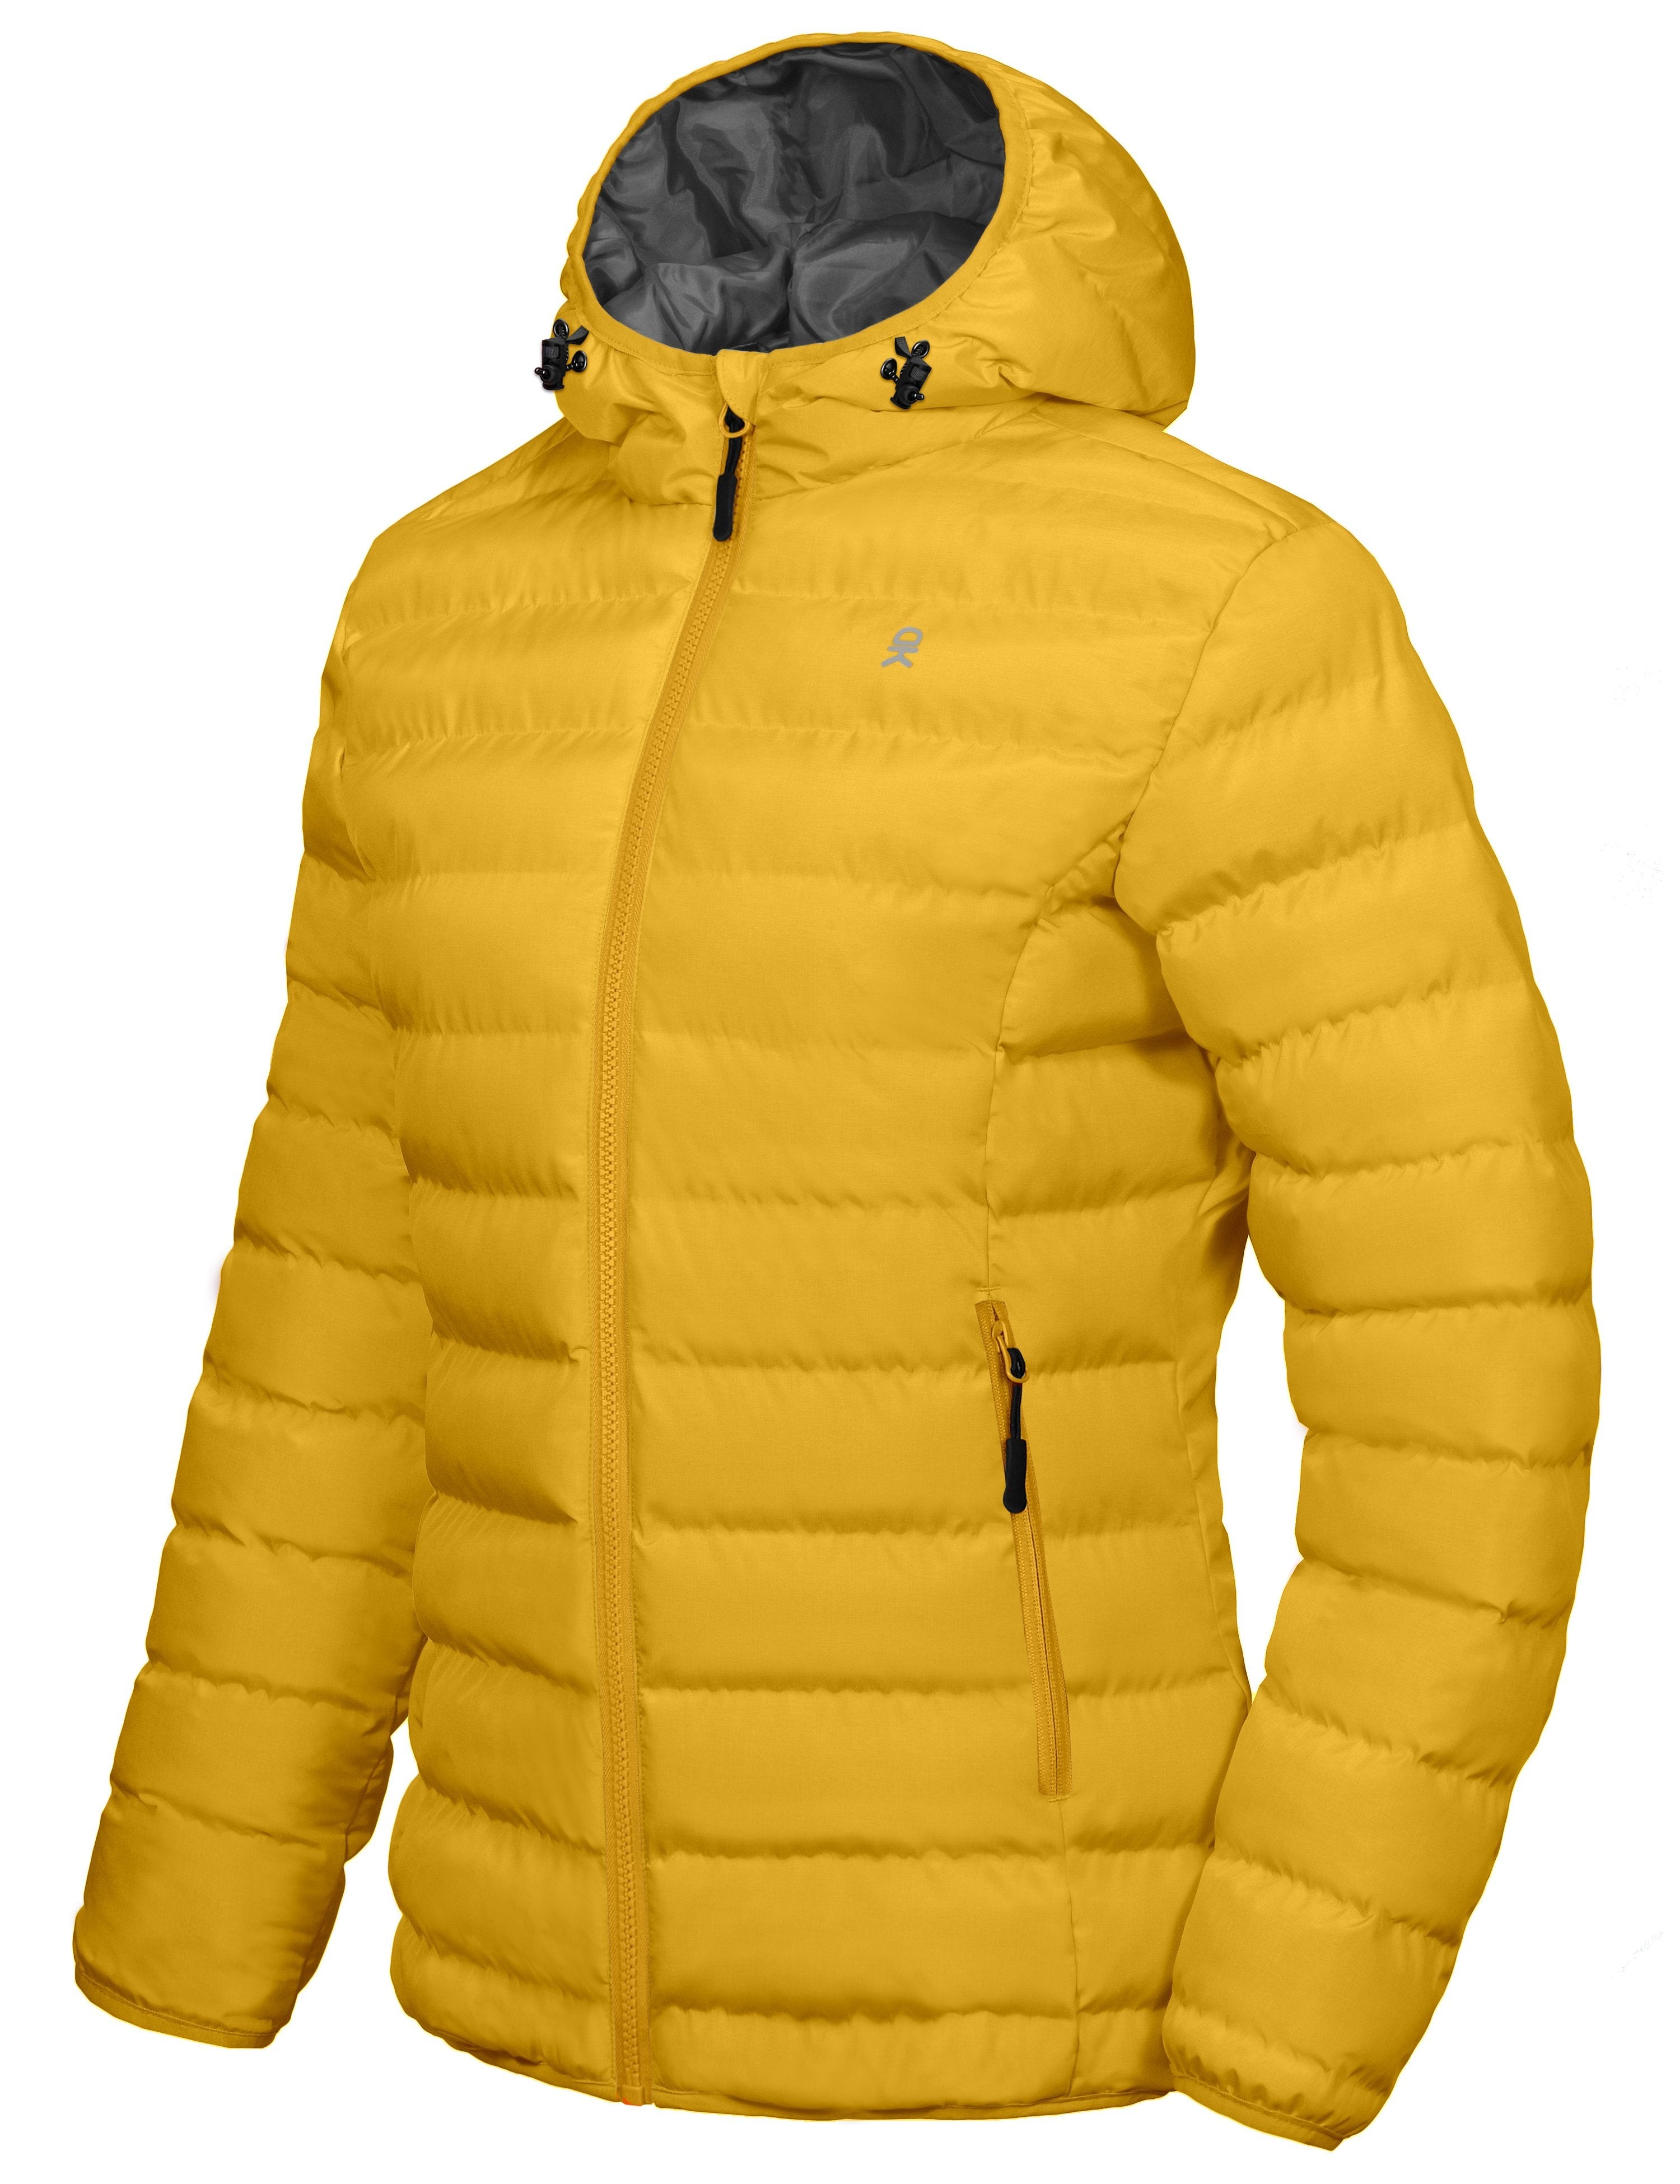 Women's Warm Waterproof Hooded Puffer Jacket – Little Donkey Andy